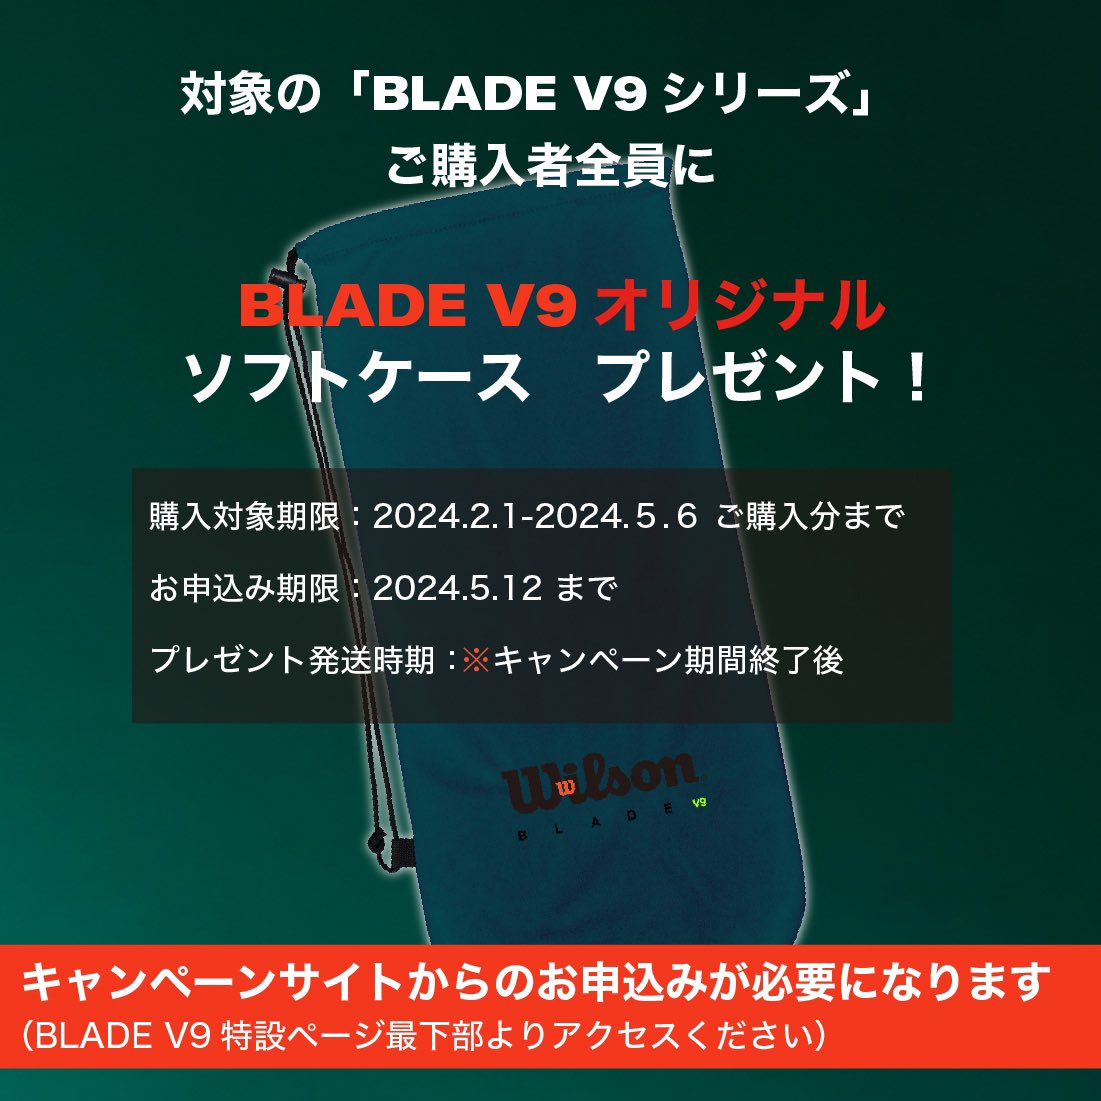 BLADE V9キャンペーン
ご購入対象期間は本日5/6(月)まで！
ご検討中の方はぜひこの機会に！